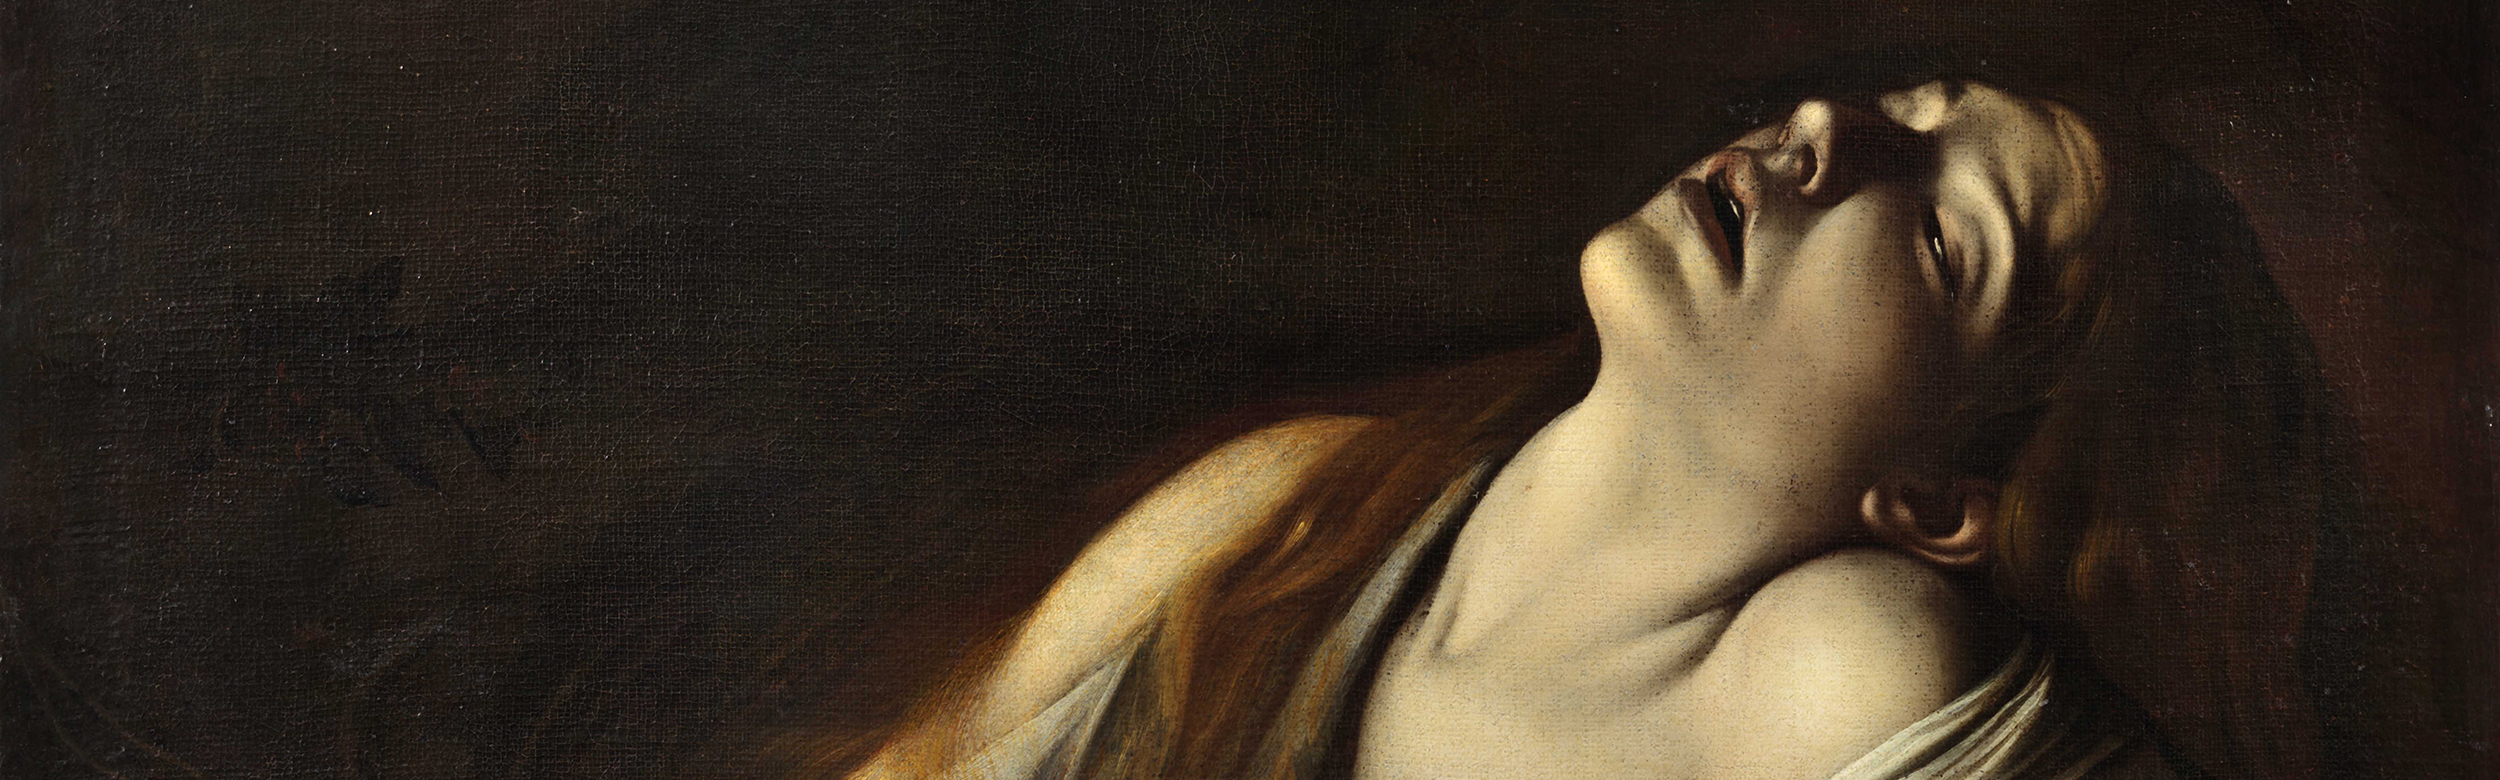 Las Magdalenas de Caravaggio se descubren en París